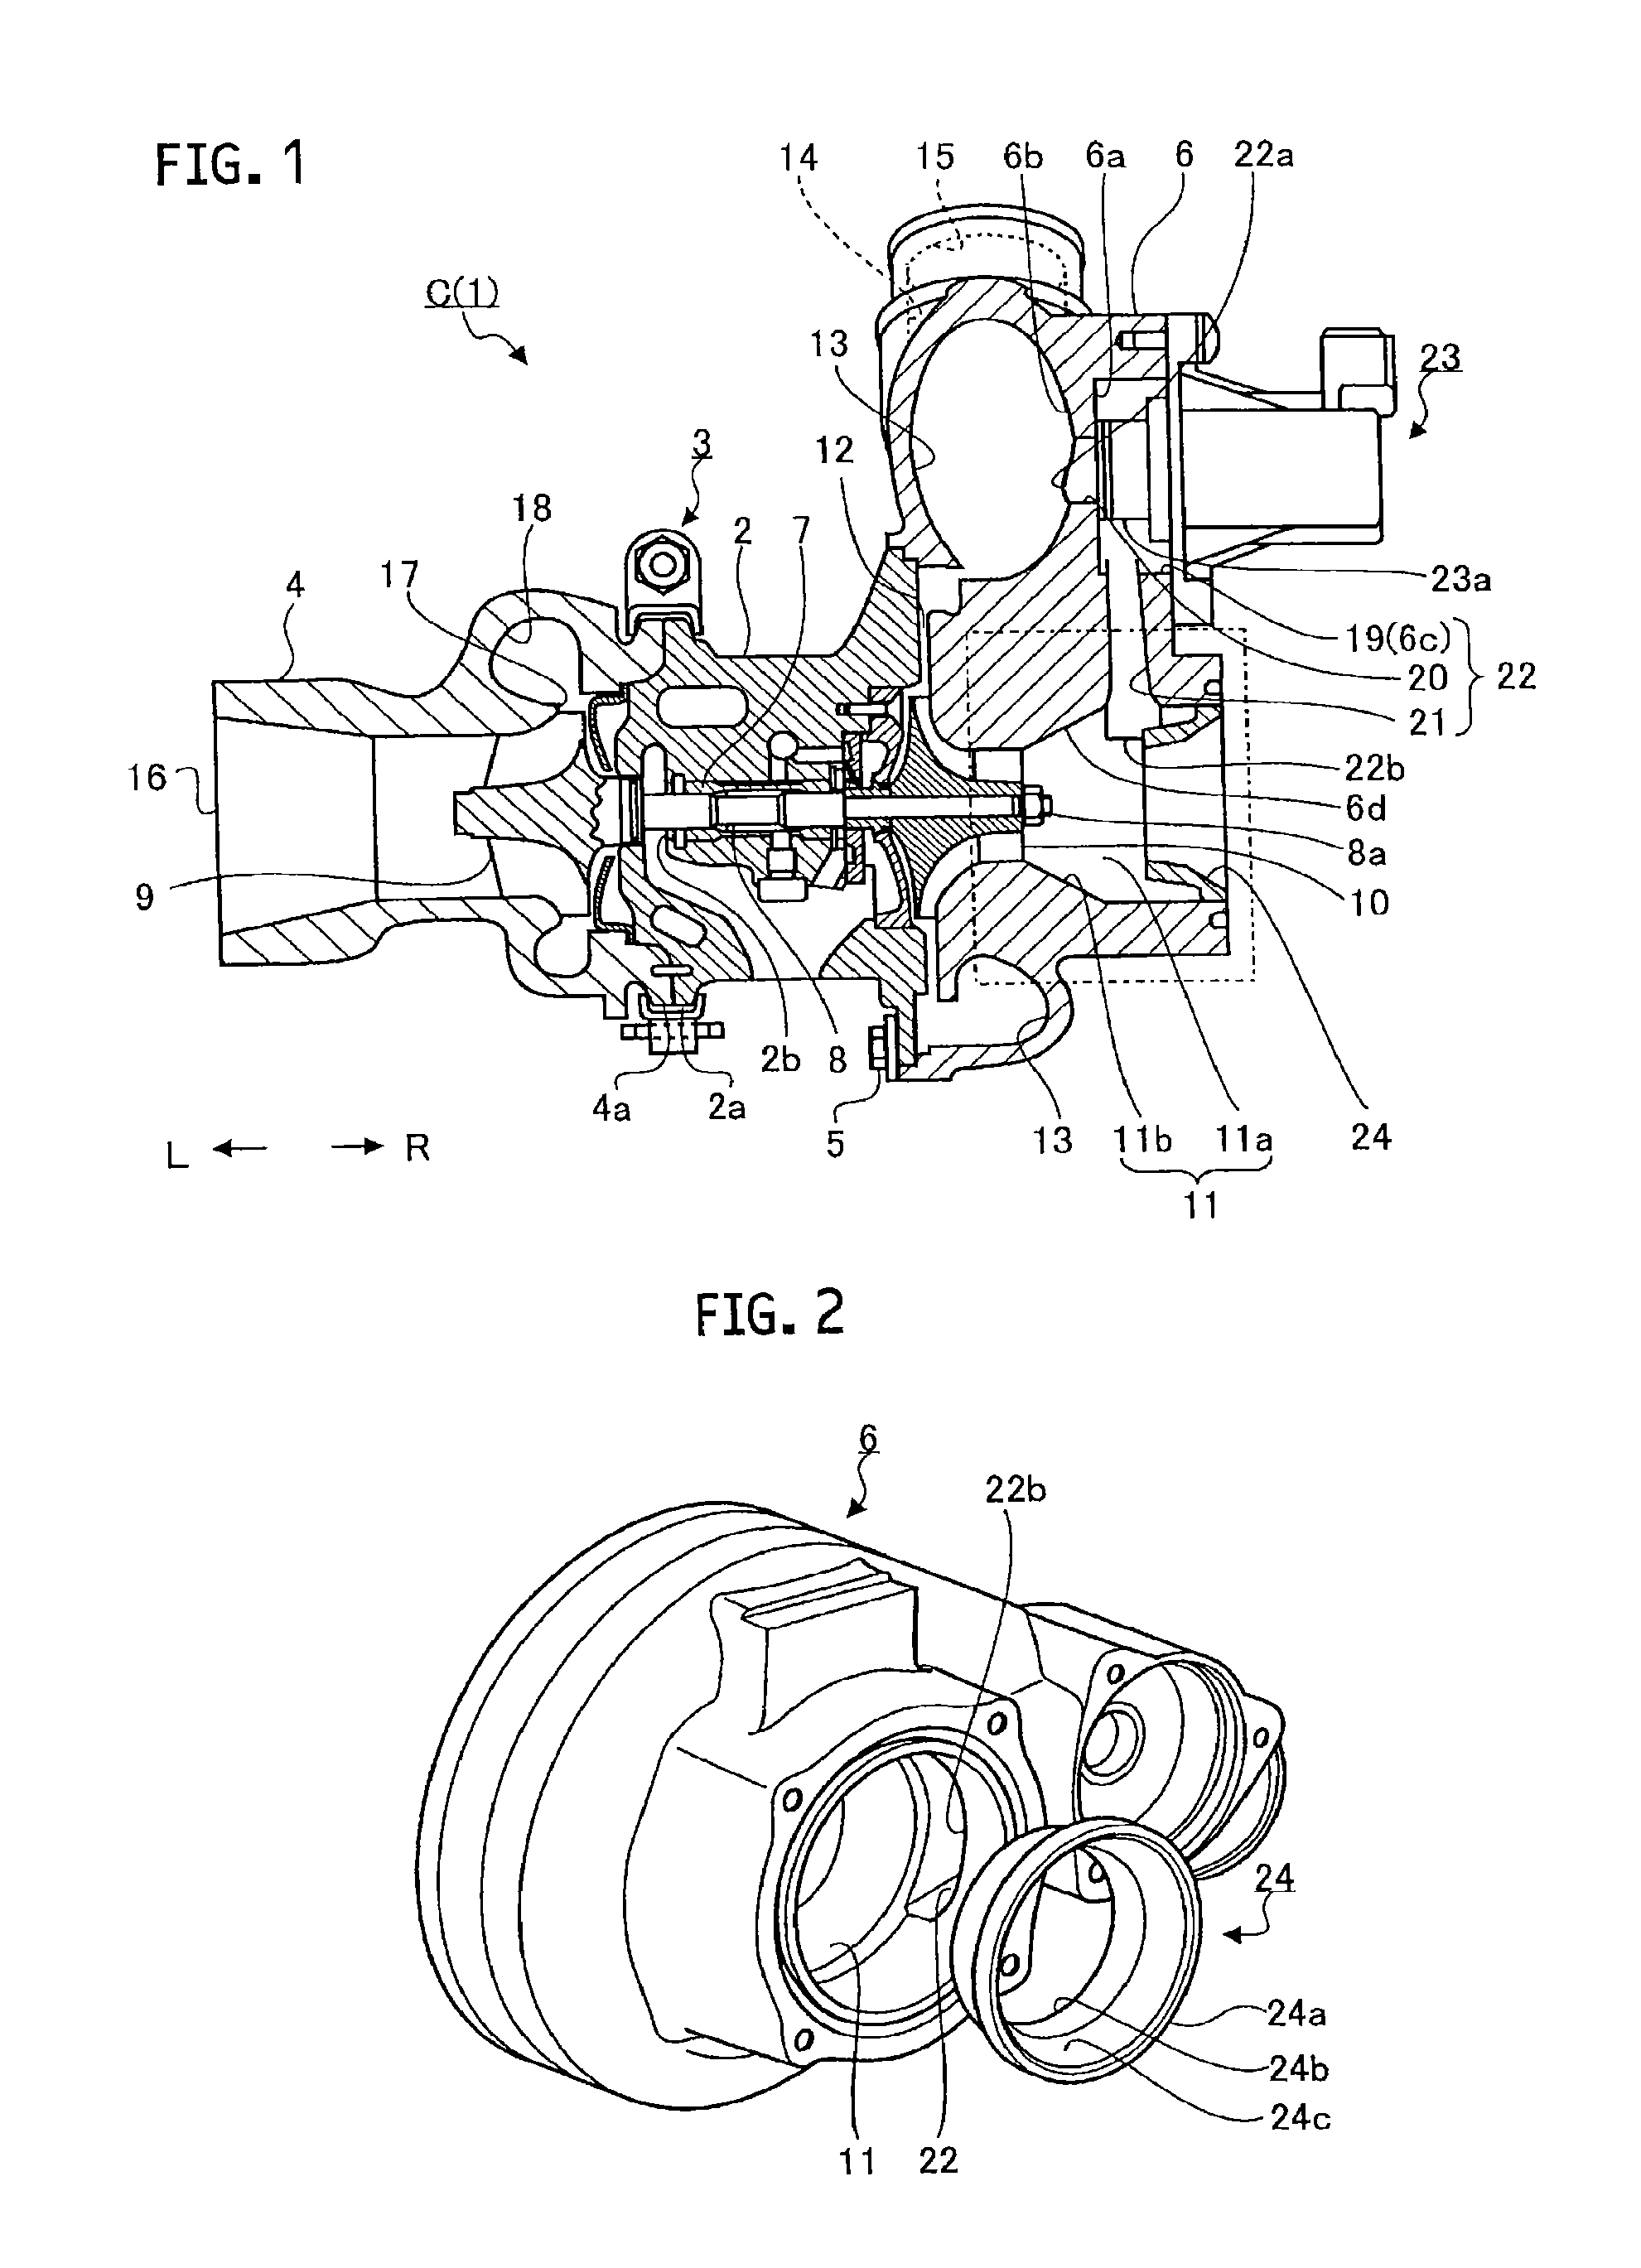 Centrifugal compressor and turbocharger